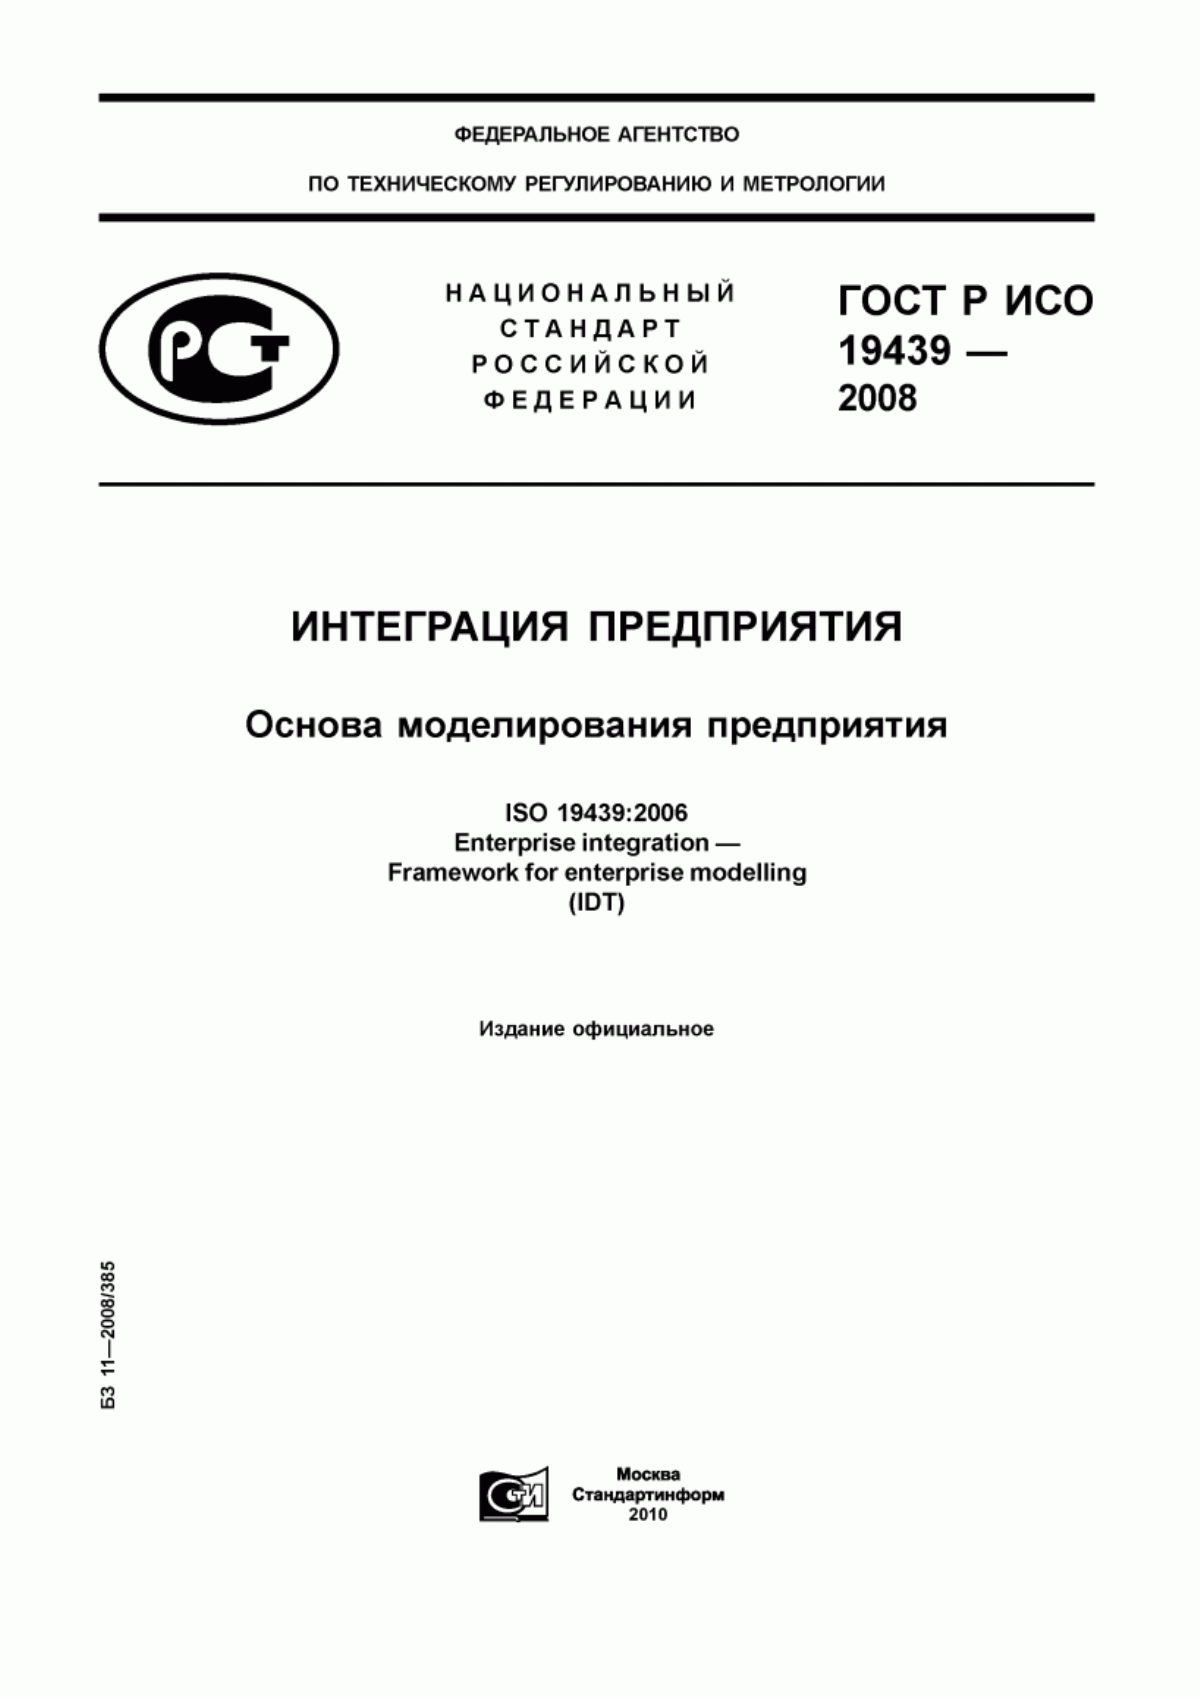 ГОСТ Р ИСО 19439-2008 Интеграция предприятия. Основа моделирования предприятия